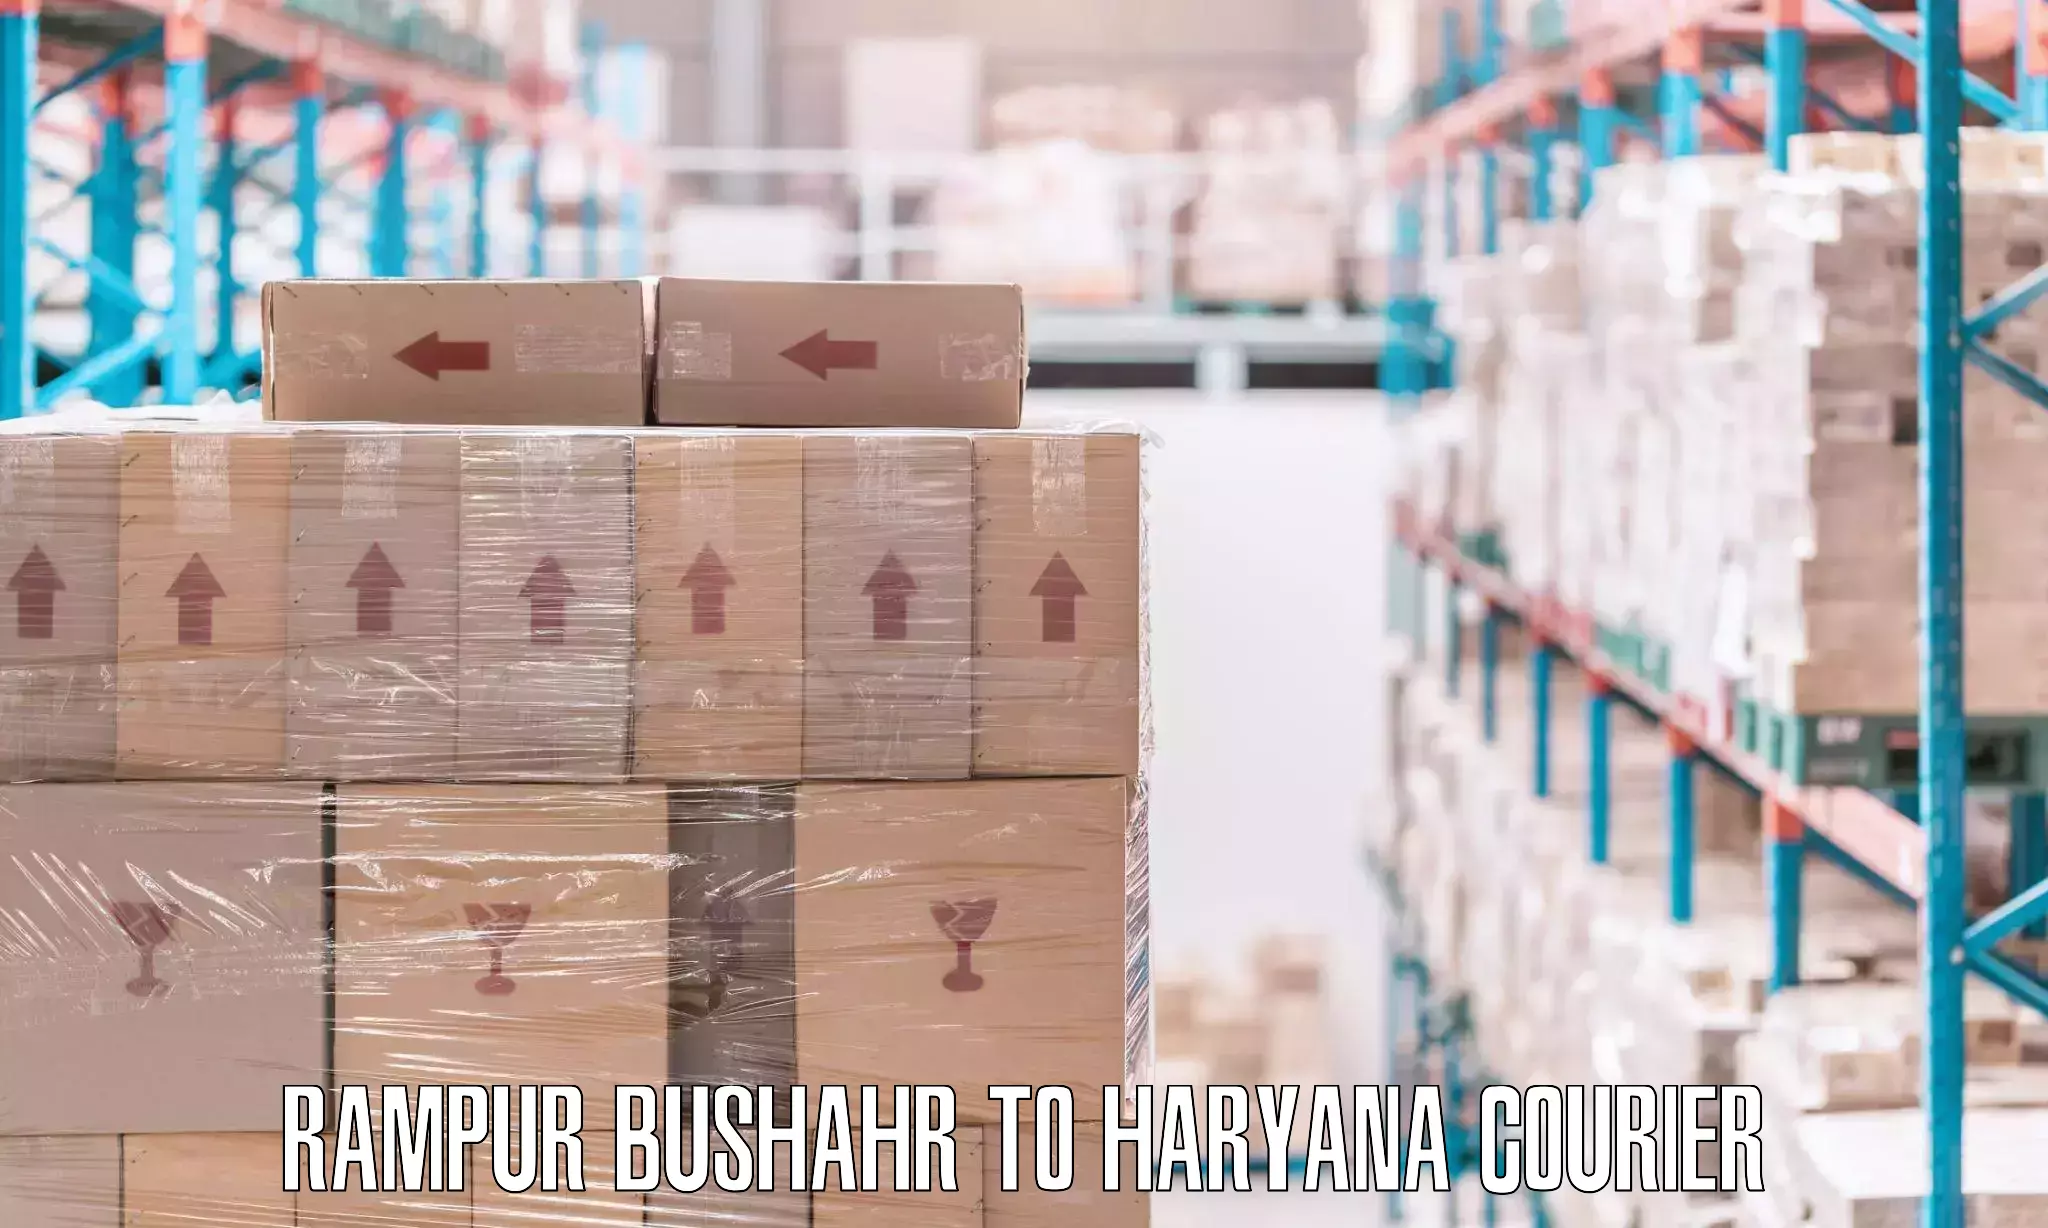 Furniture transport service Rampur Bushahr to Panchkula